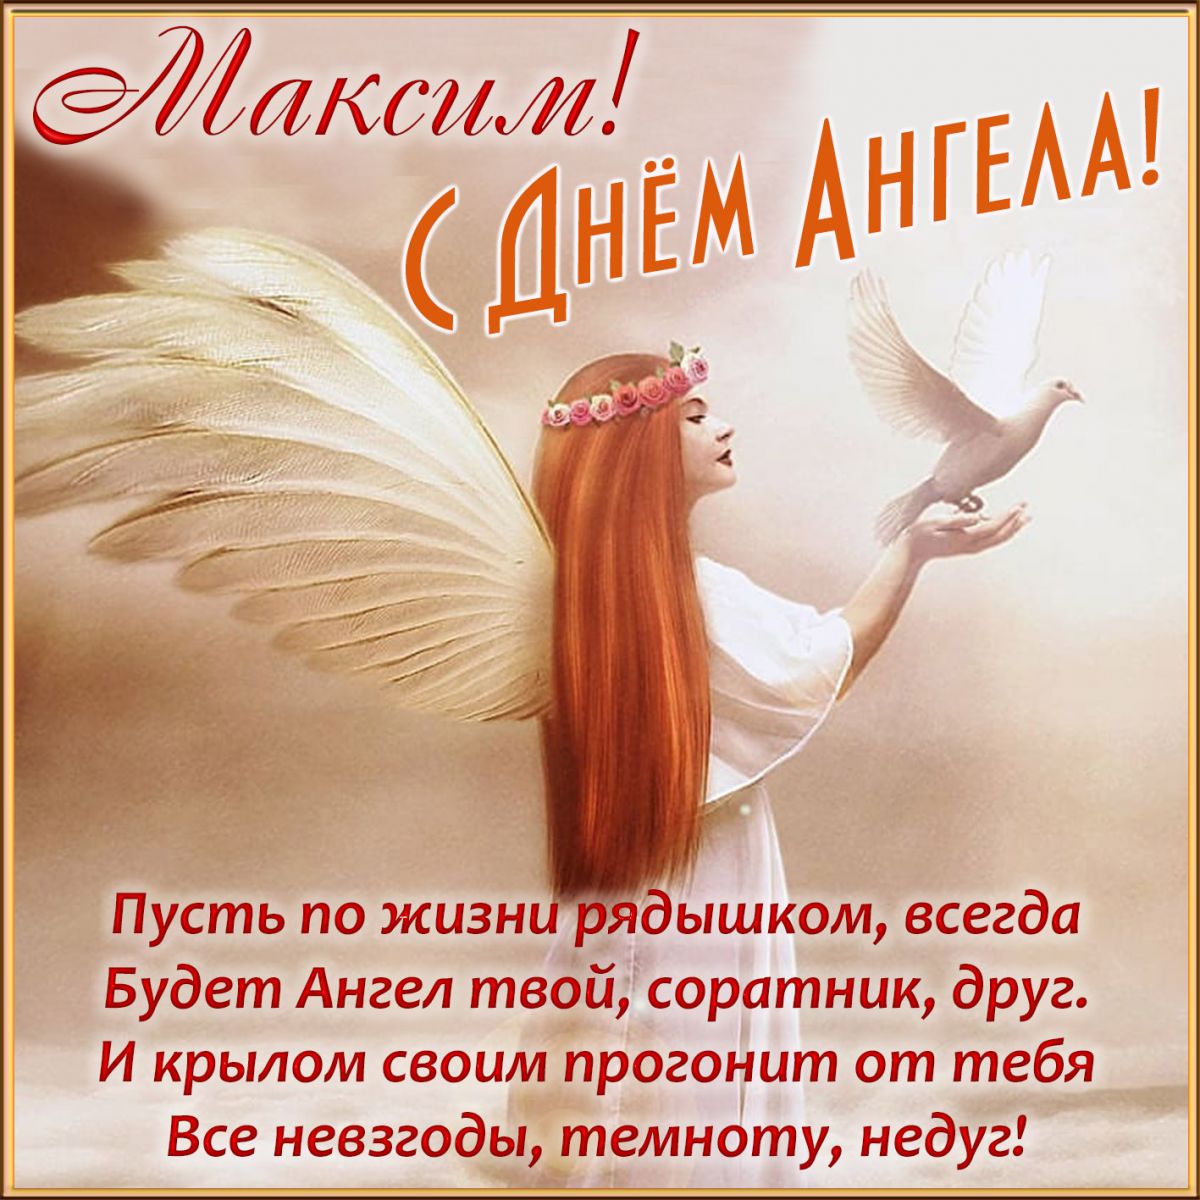 День ангела Максима